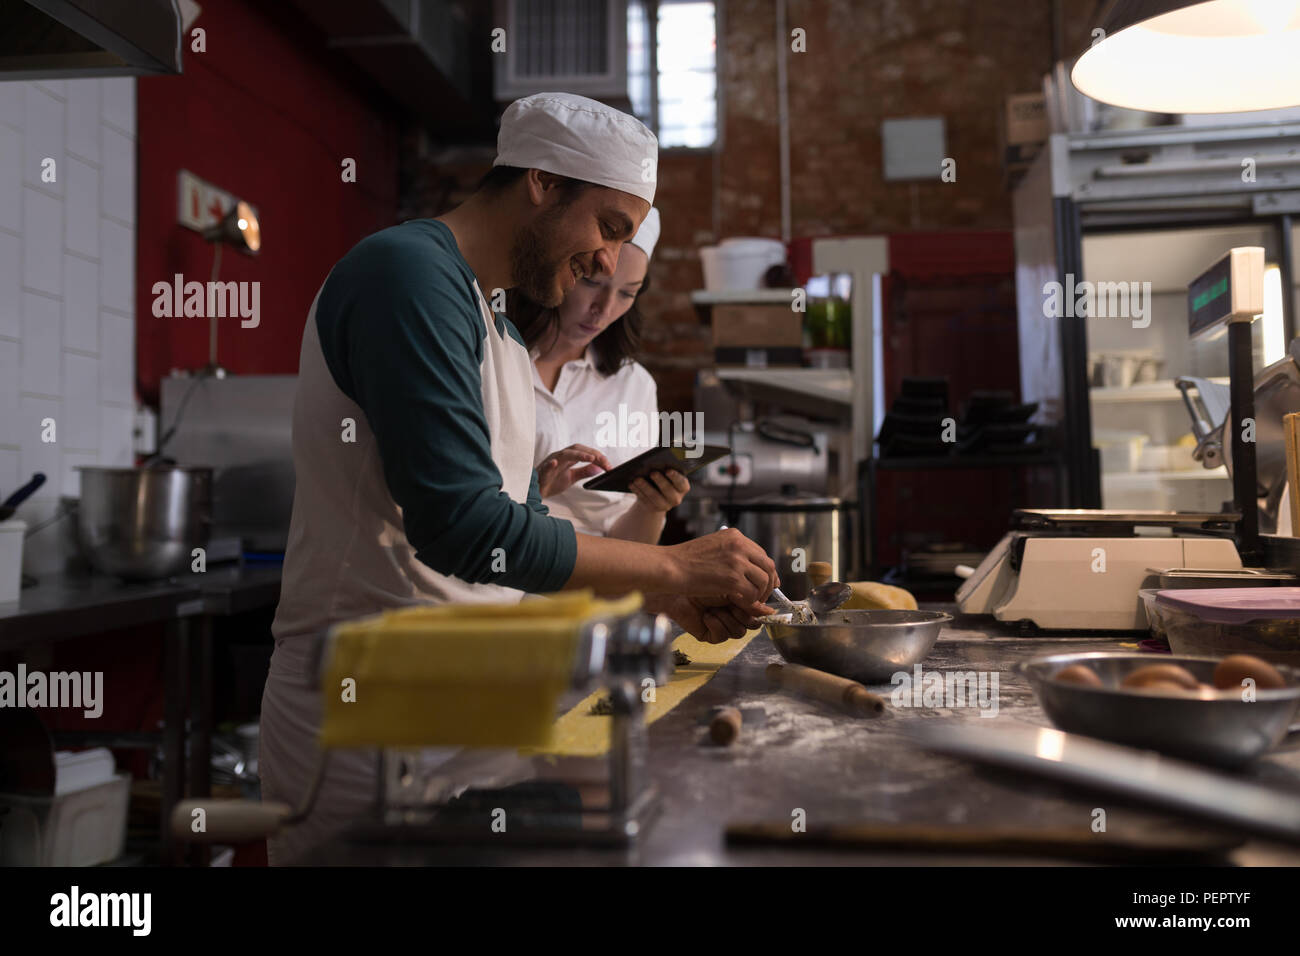 Baker Vorbereitung Pasta während die Co-worker mit digitalen Tablet seine neben Stockfoto